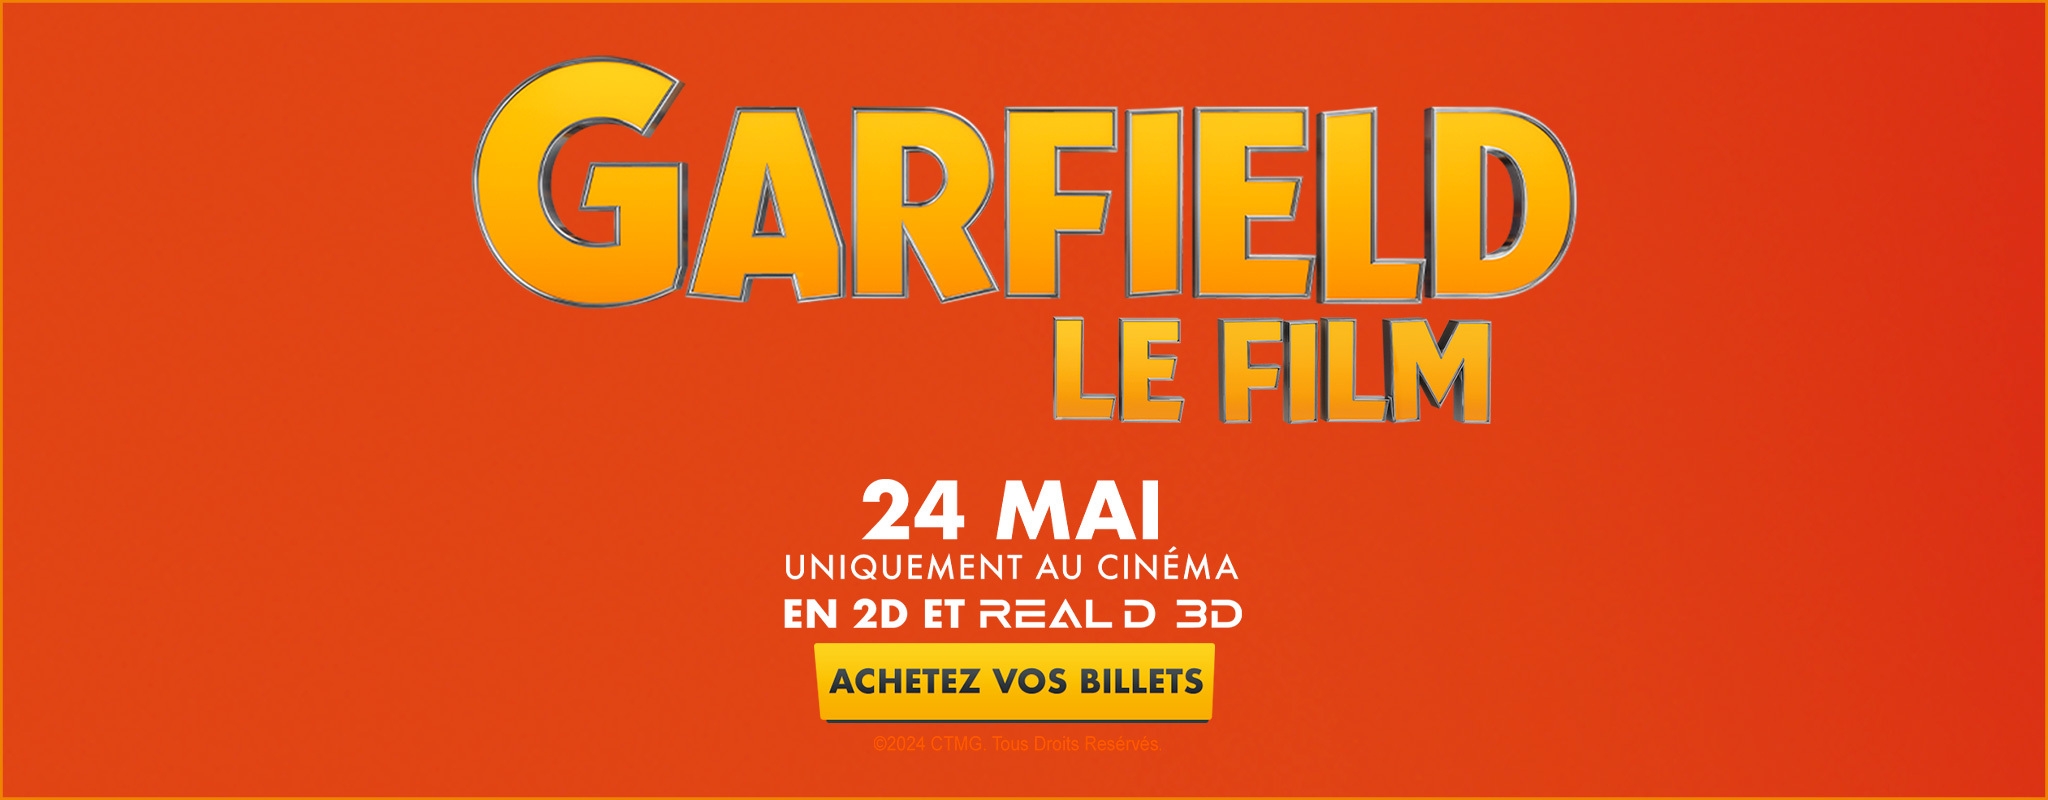 GARFIELD LE FILM 24 MAI UNIQUEMENT AU CINÉMA EN 2D ET REAL D 3D ACHETEZ VOS BILLETS